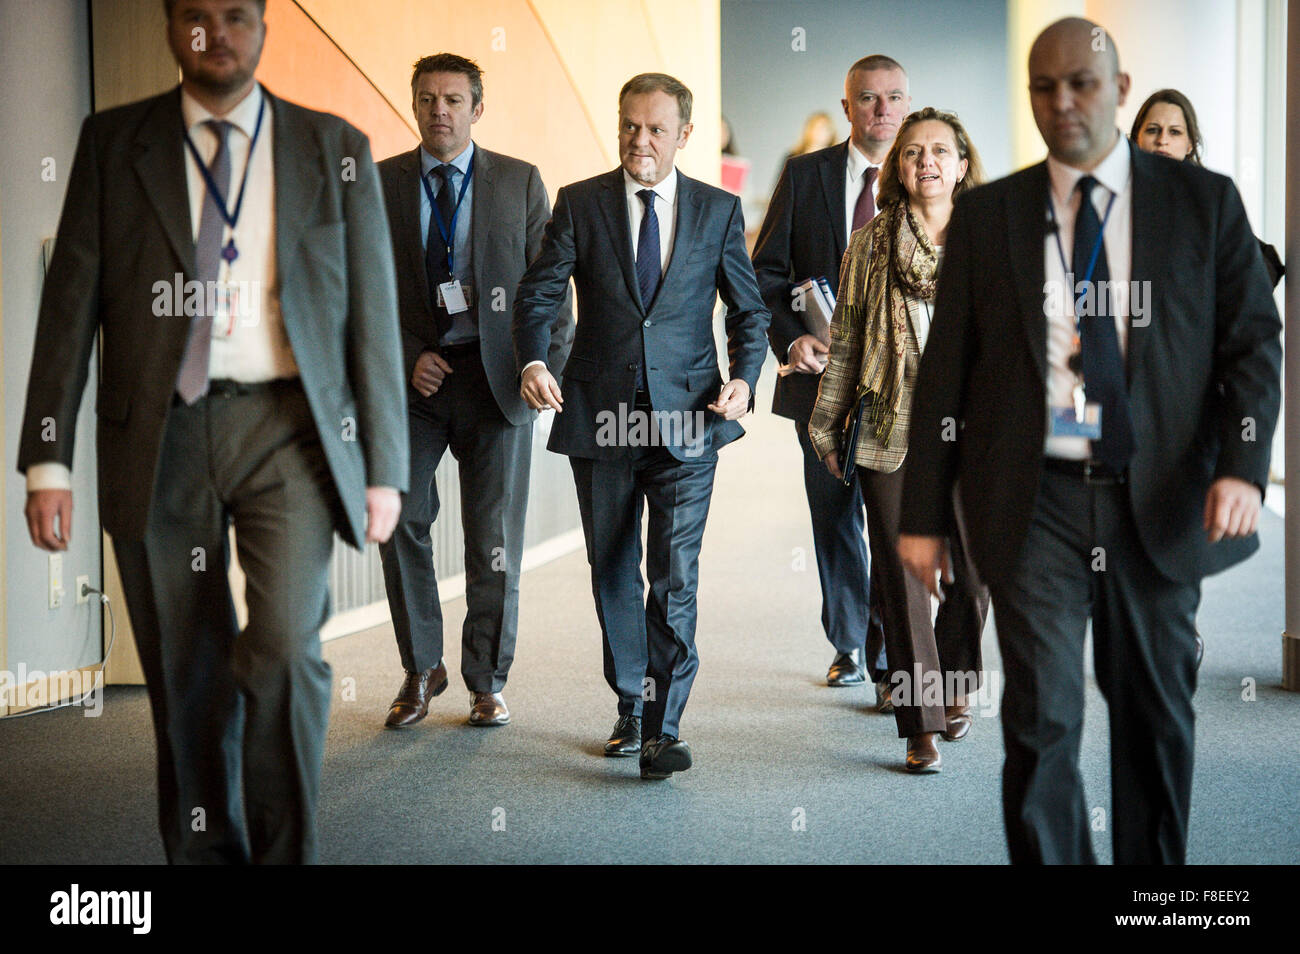 Brüssel, Belgien. 9. Dezember 2015. Donald Tusk, kommt der Präsident des Europäischen Rates für das Treffen mit EU-Fraktionen im Europäischen Parlament Hauptquartier in Brüssel, Belgien. Bildnachweis: Dpa picture Alliance/Alamy Live News Stockfoto